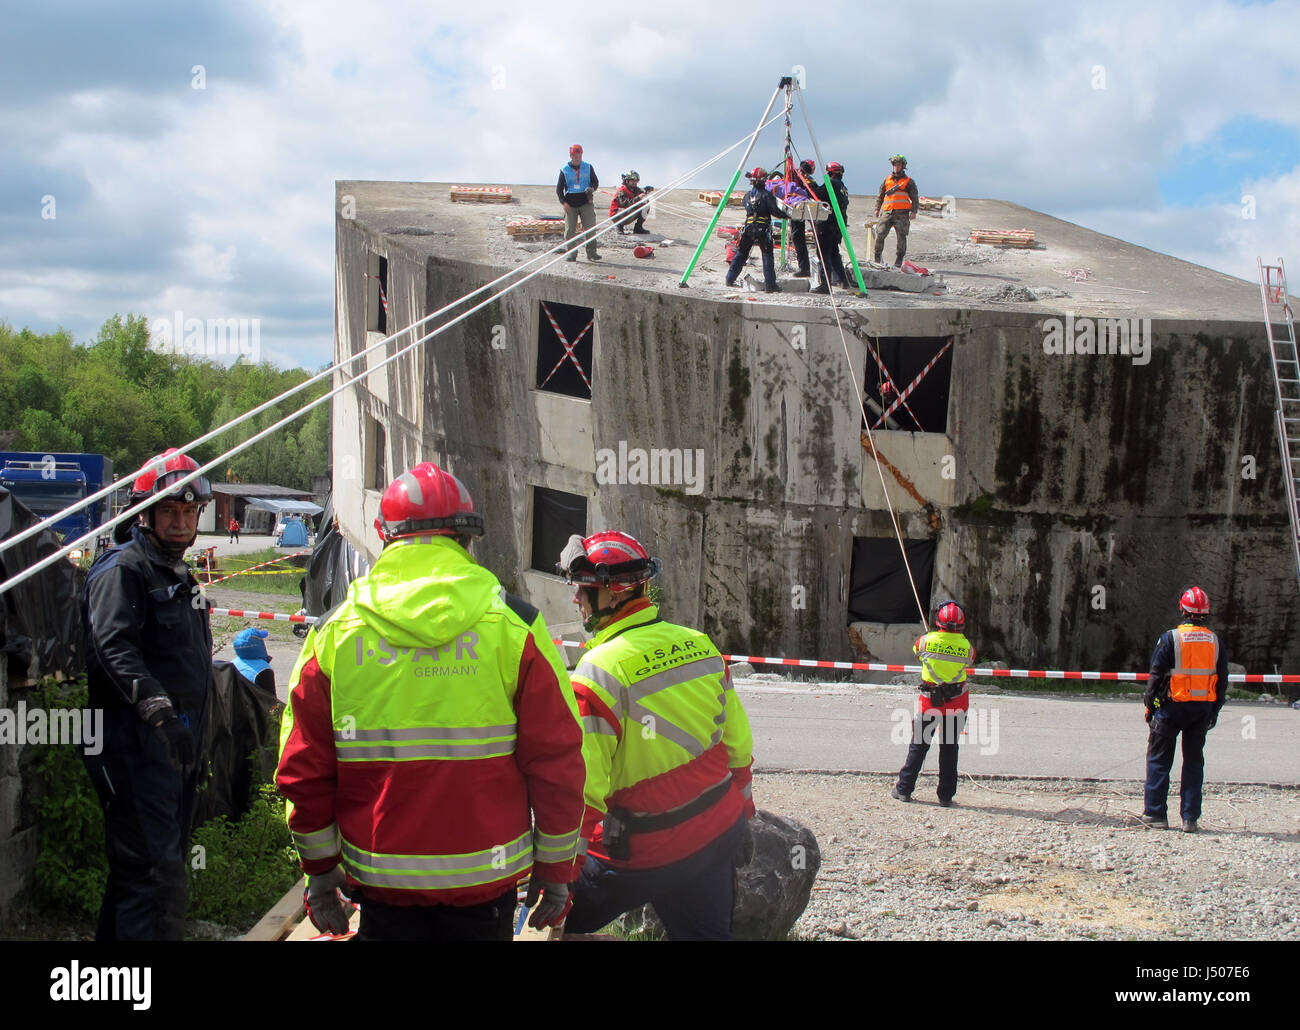 Genf, Schweiz. 9. Mai 2017. Freiwillige der deutschen Nothilfe Organisation  ISAR Praxis der Rettung von verletzten Personen während eines Erdbebens  Bohren Epeisses in der Nähe von Genf, Schweiz, 9. Mai 2017. Foto: